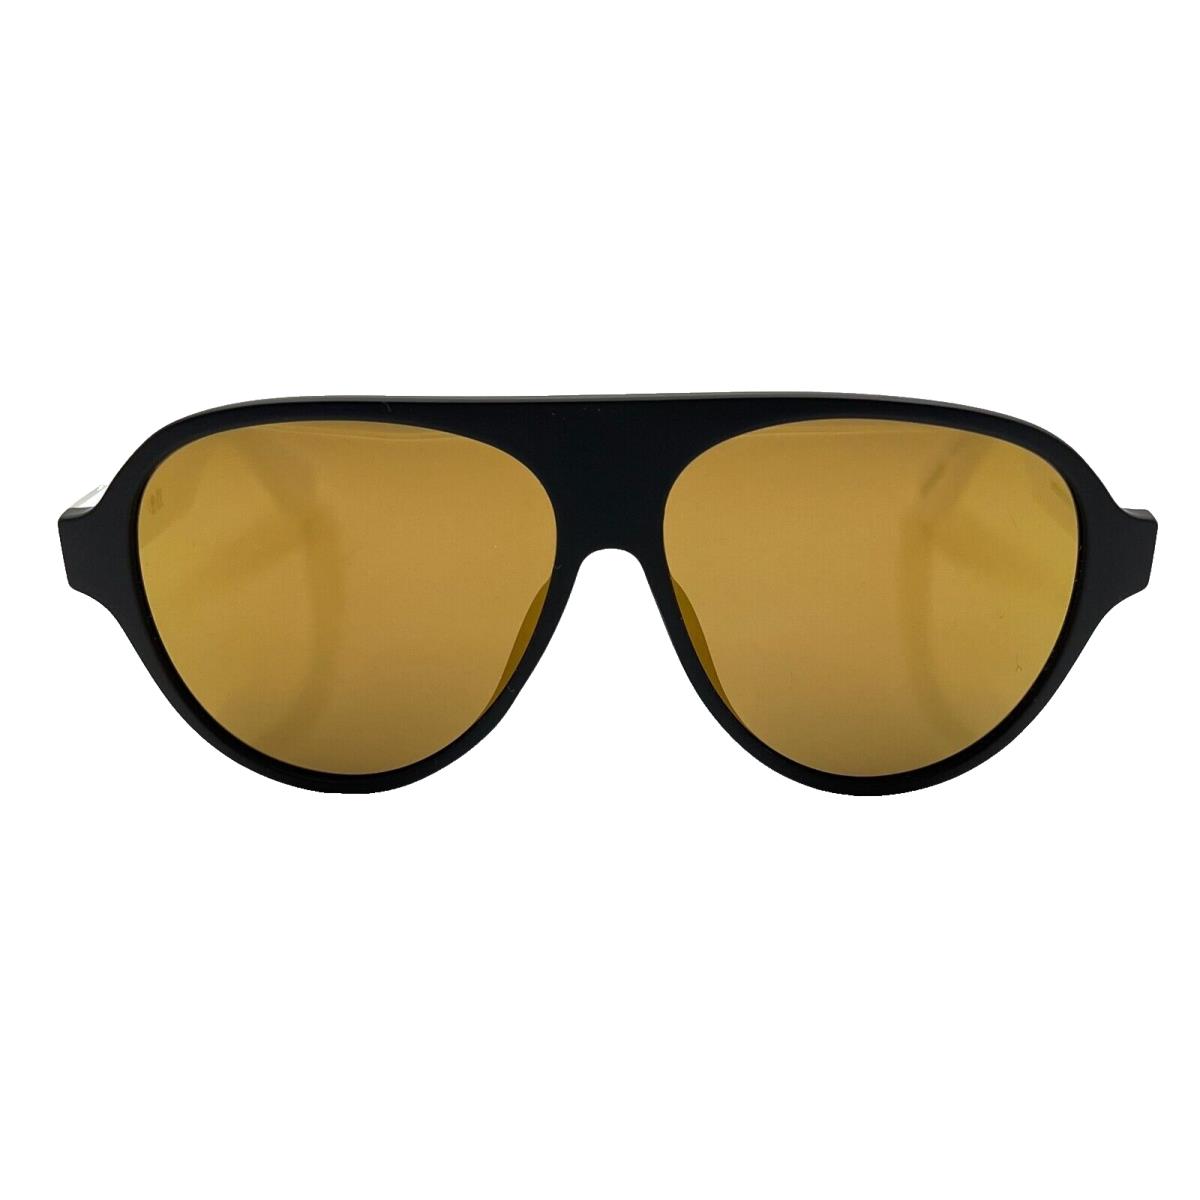 Adidas Originals - OR0059 02G 57/12/145 - Black Sunglasses Case